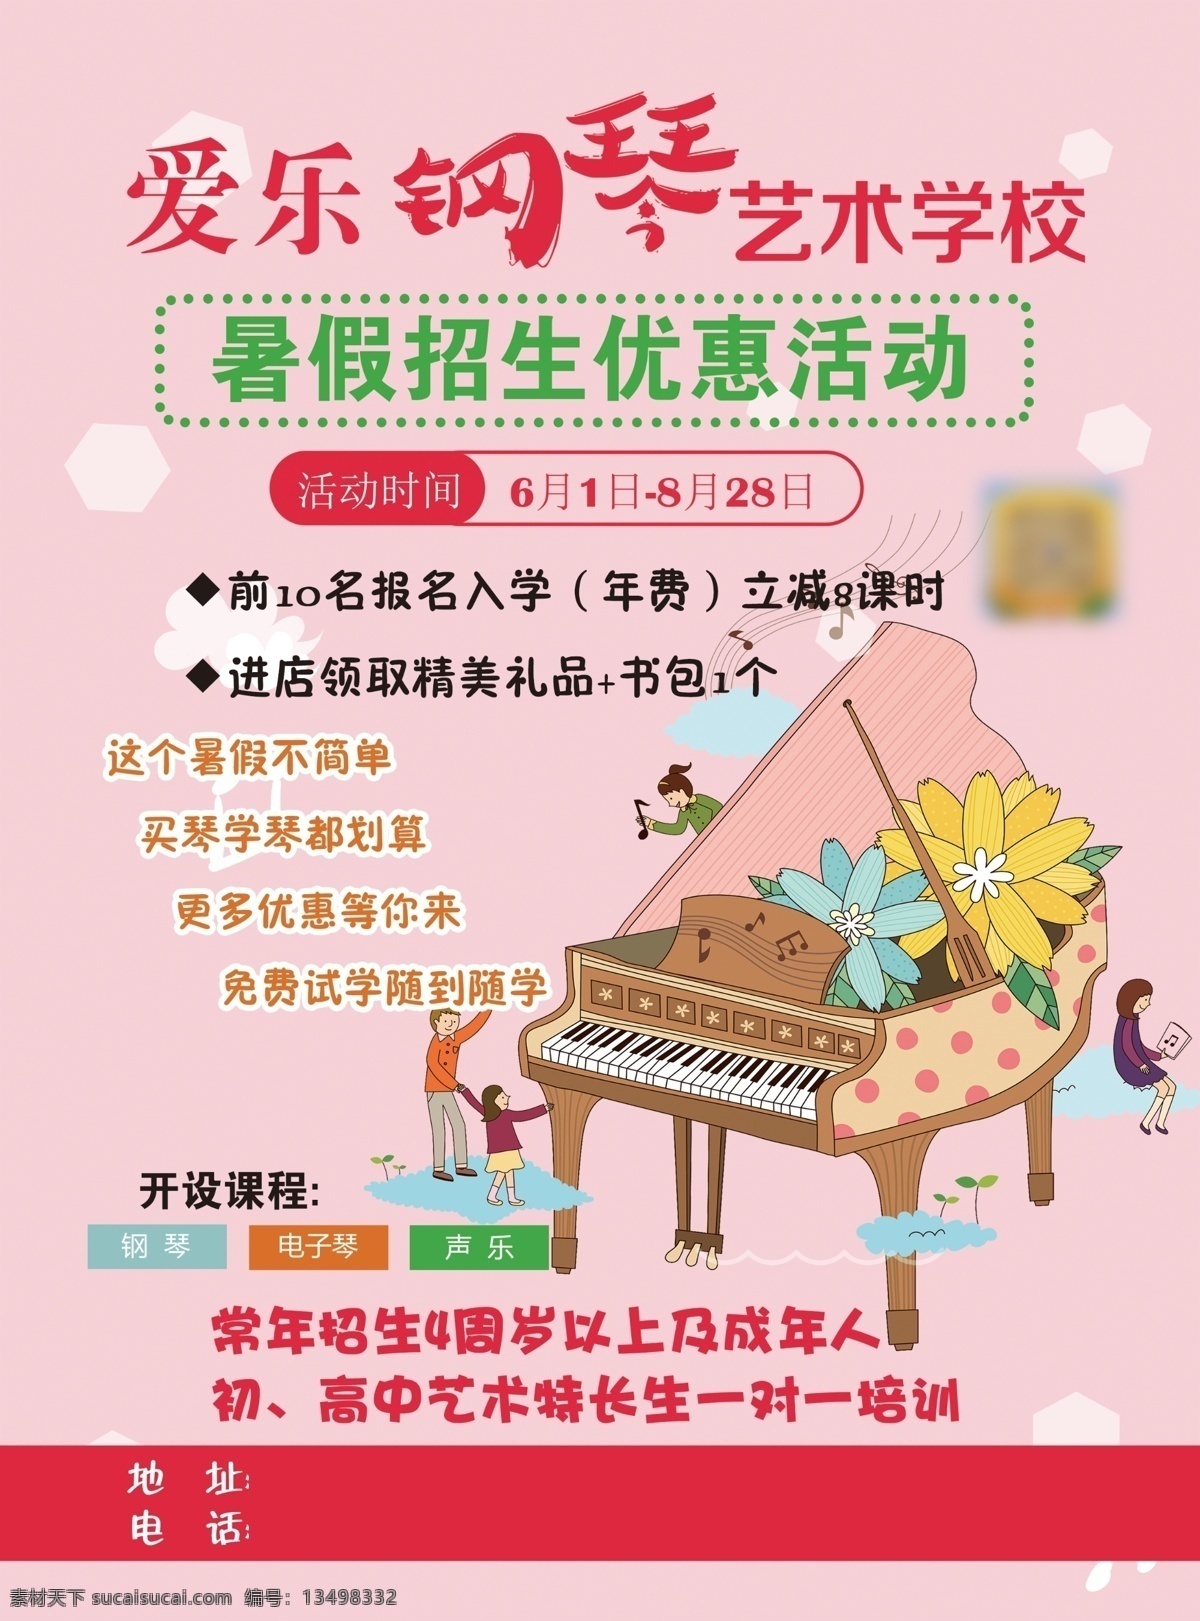 钢琴 艺术 学校 彩页 招生 海报 分层